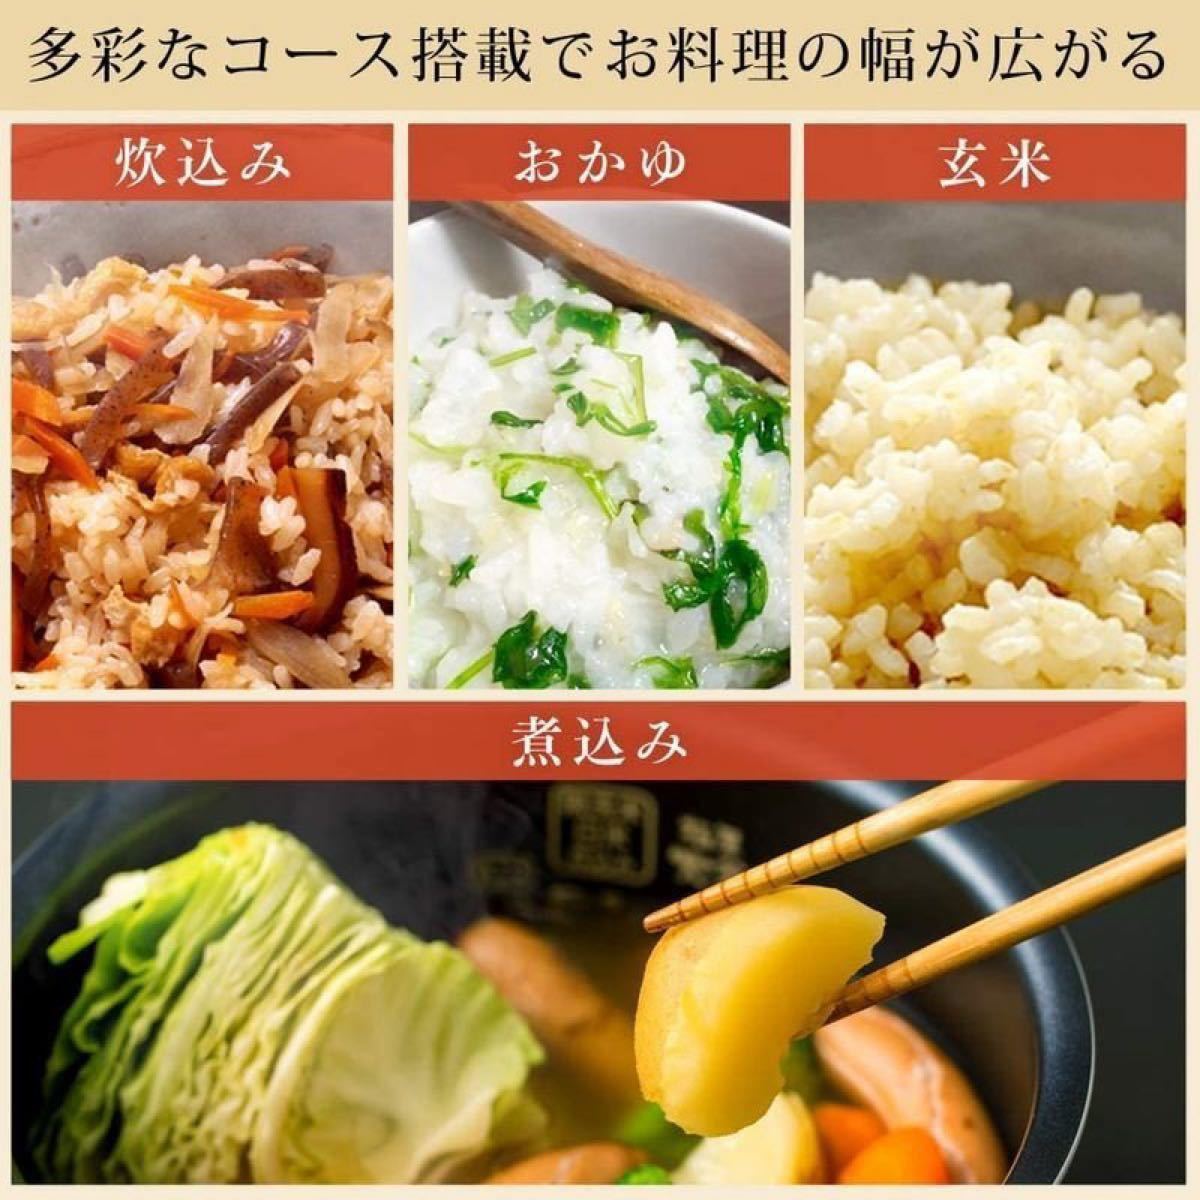 【未使用】アイリスオーヤマ IHジャー炊飯器 黒 5.5合炊き 米屋の旨み 銘柄炊き